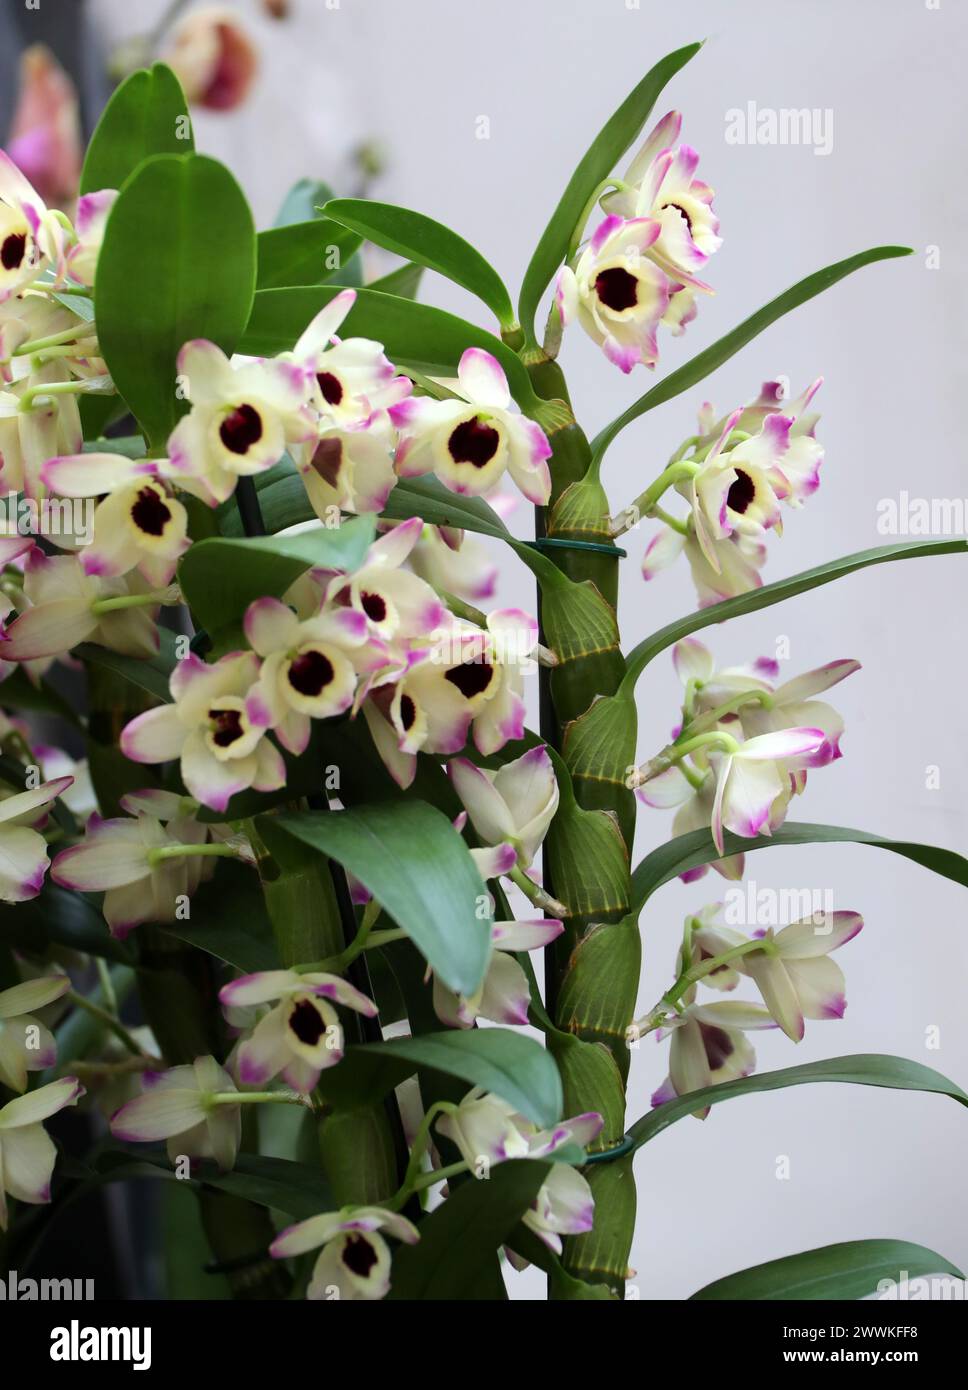 Orchidea, Dendrobium Brilliant Smile, Dendrobiinae, Orchidaceae. Il Dendrobium è un genere di orchidee per lo più epifitiche e litofisiche. Foto Stock